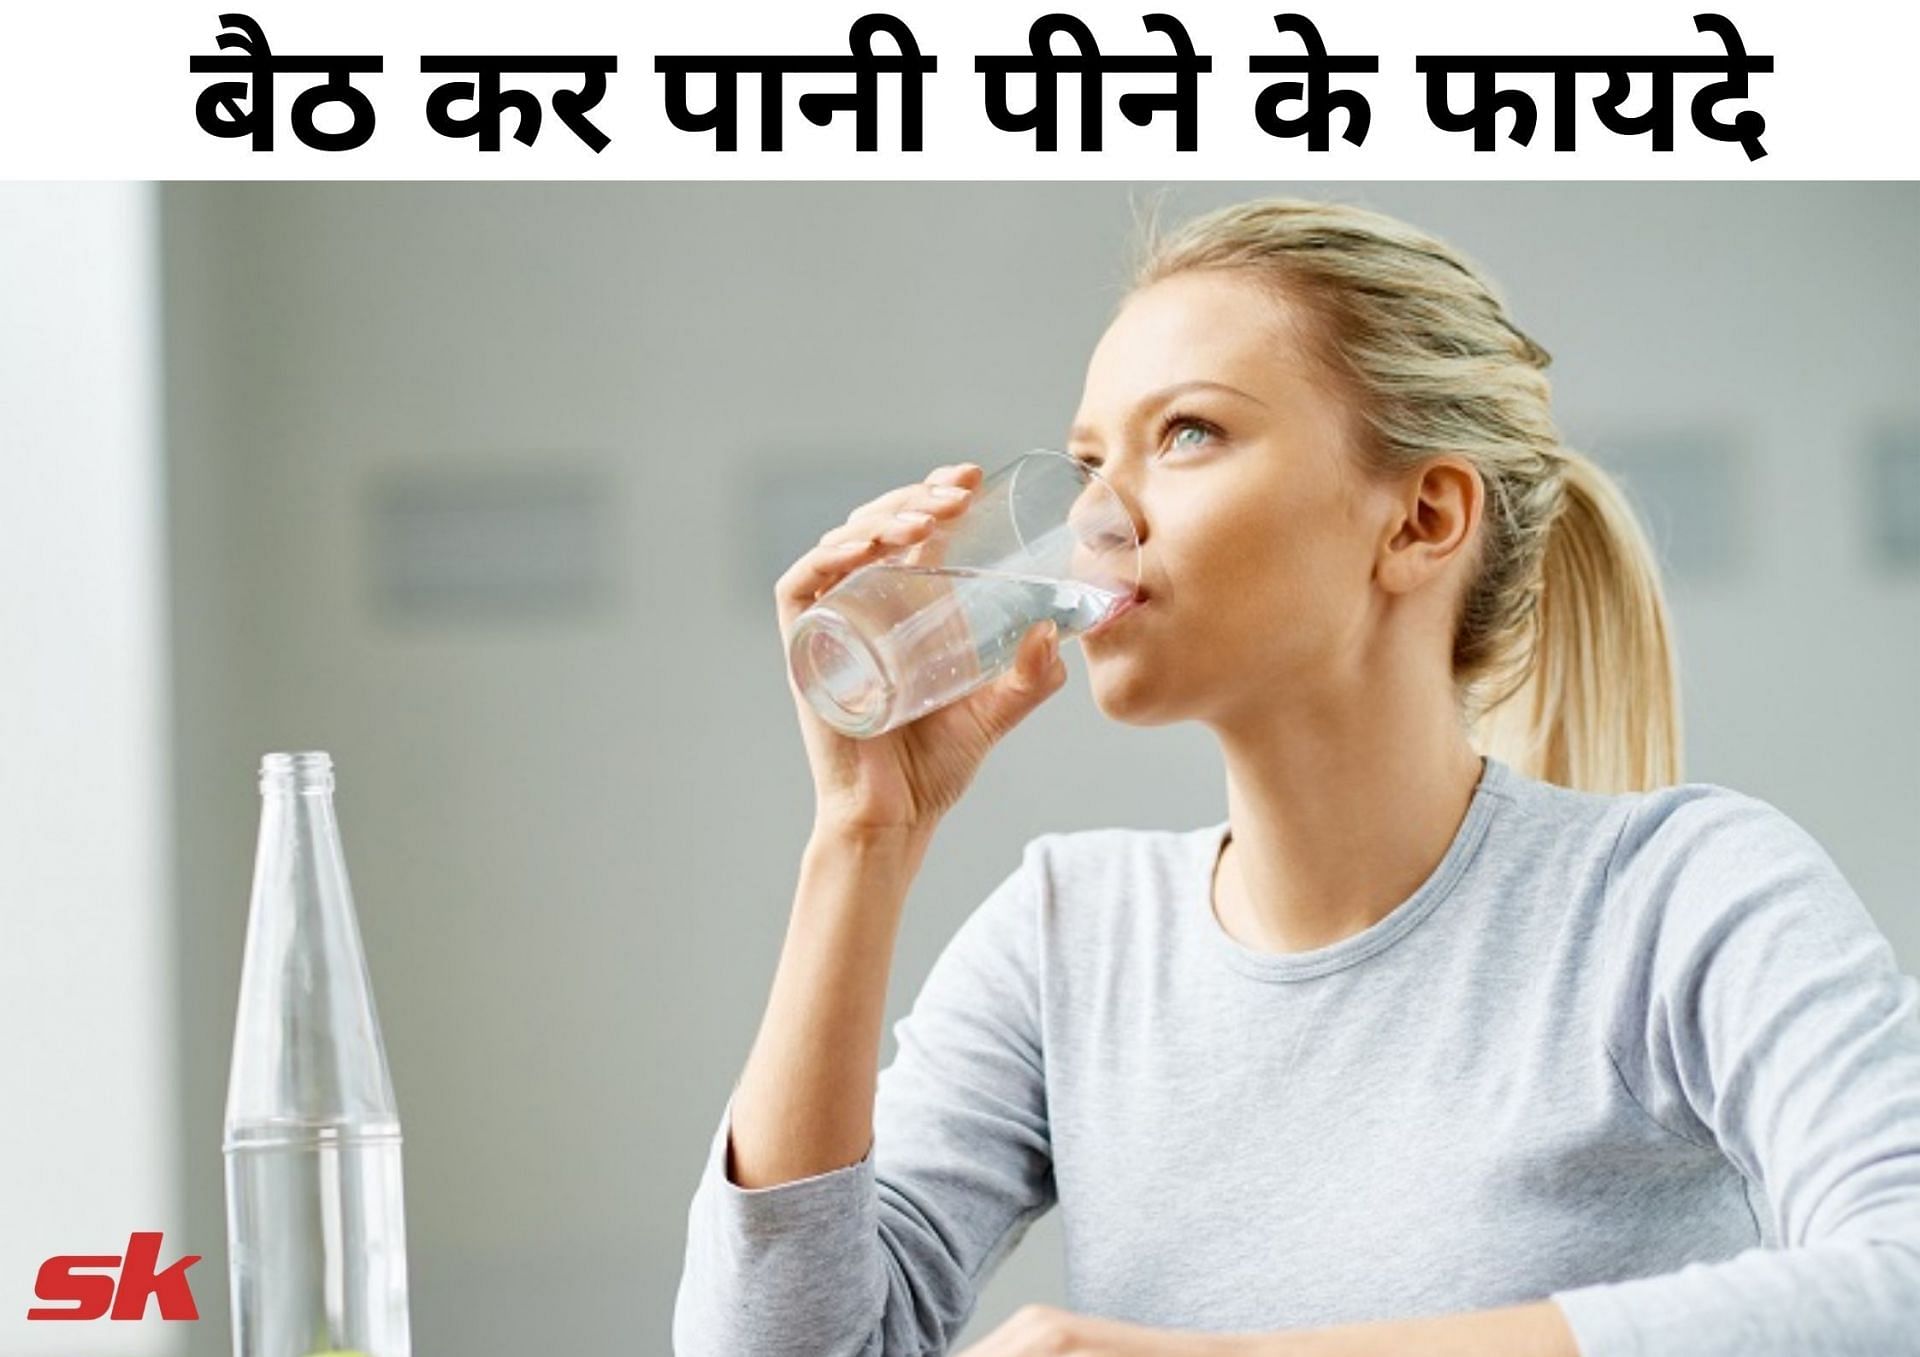 बैठ कर पानी पीने के फायदे (फोटो - sportskeeda hindi)